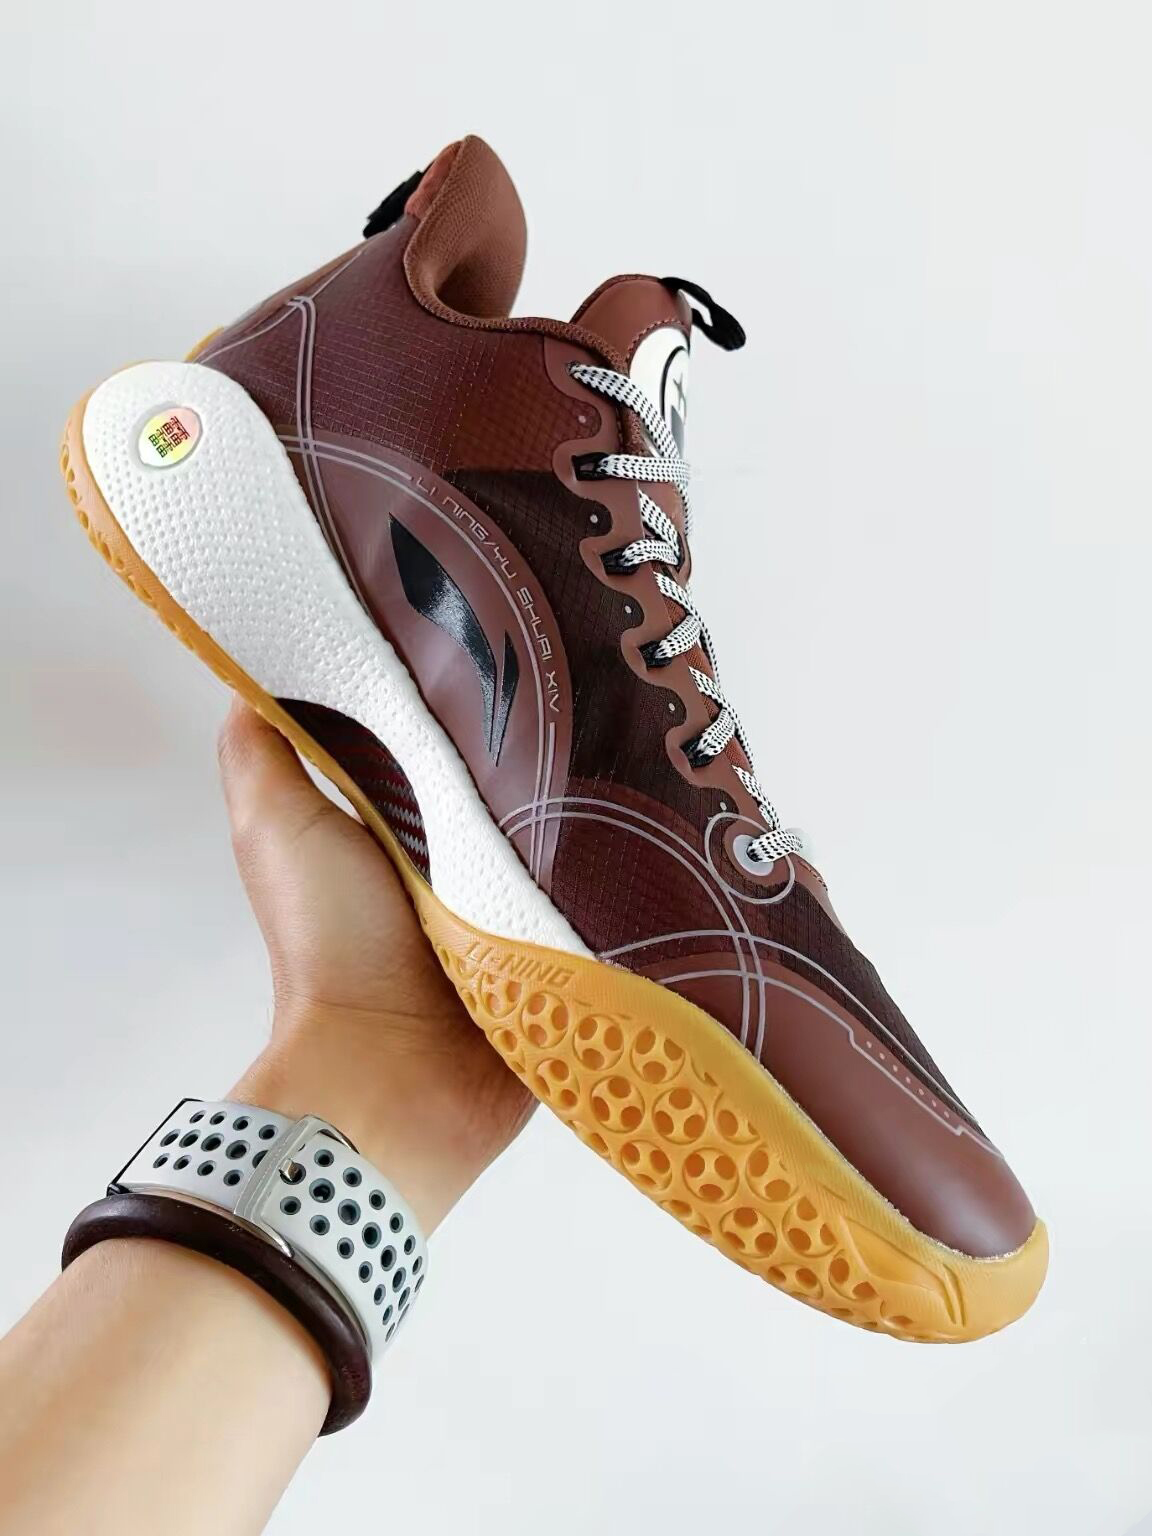 Jimmy Butler “Big Face Coffee” Li Ning Yu Shuai 14 Premium Boom Low –  LiNing Way of Wade Sneakers